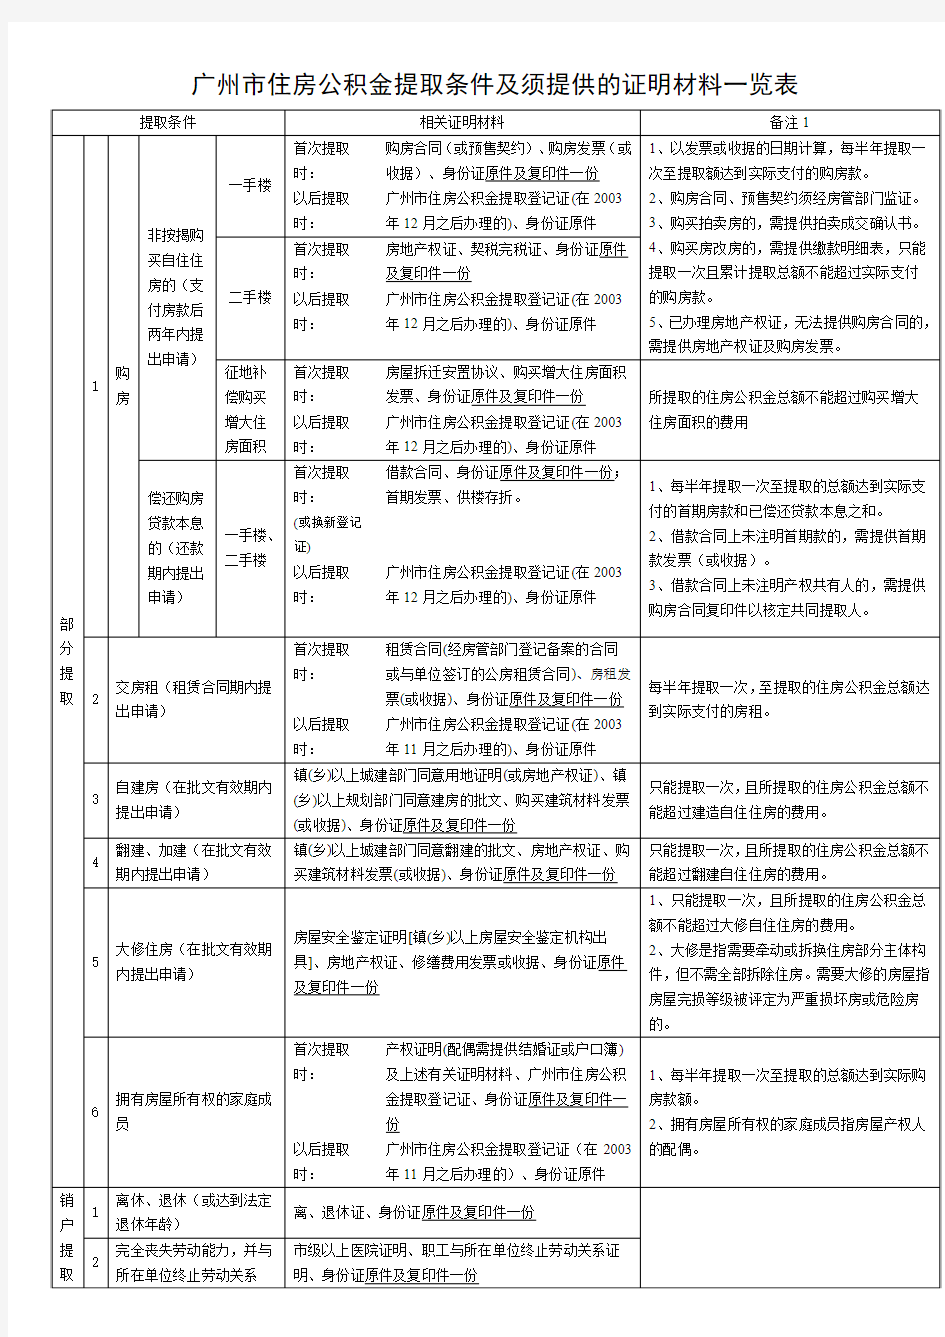 广州市住房公积金提取条件及须提供的证明材料一览表